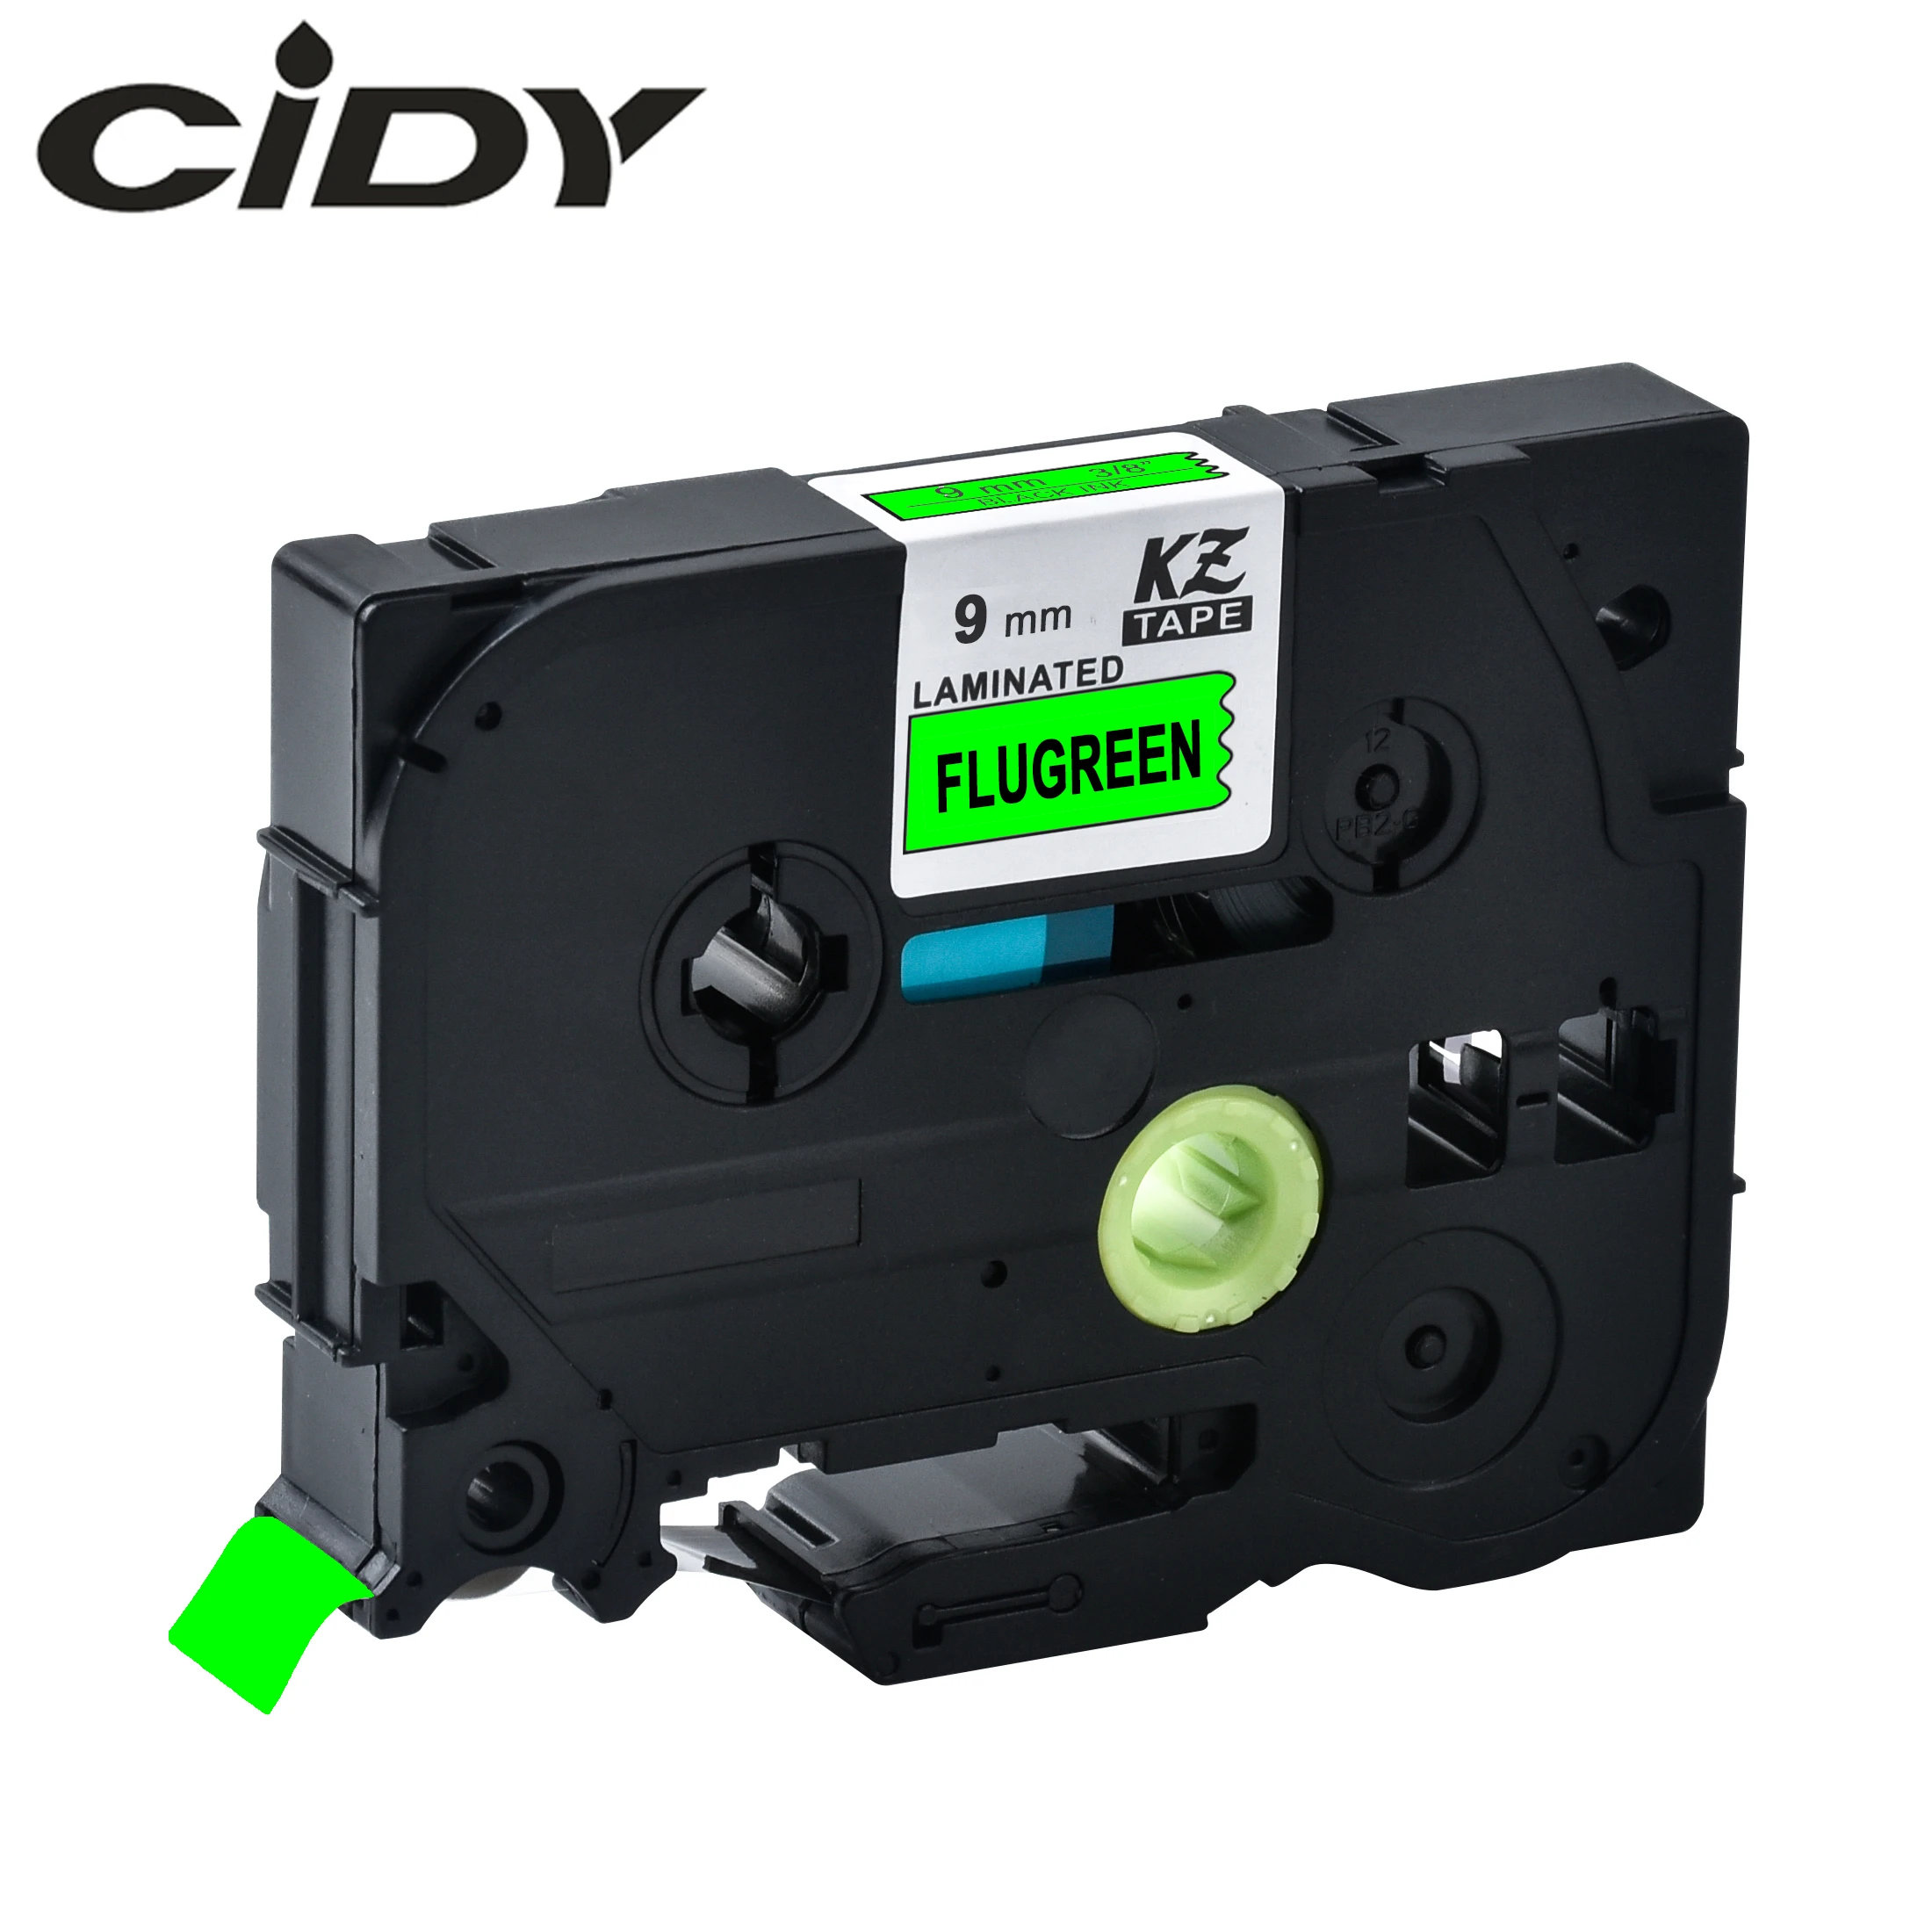 

CIDY Tze-D21 Tz-D21 black on fluorescent green Laminated Compatible P touch 9mm tze D21 tz D21 Label Tape Cassette Cartridge